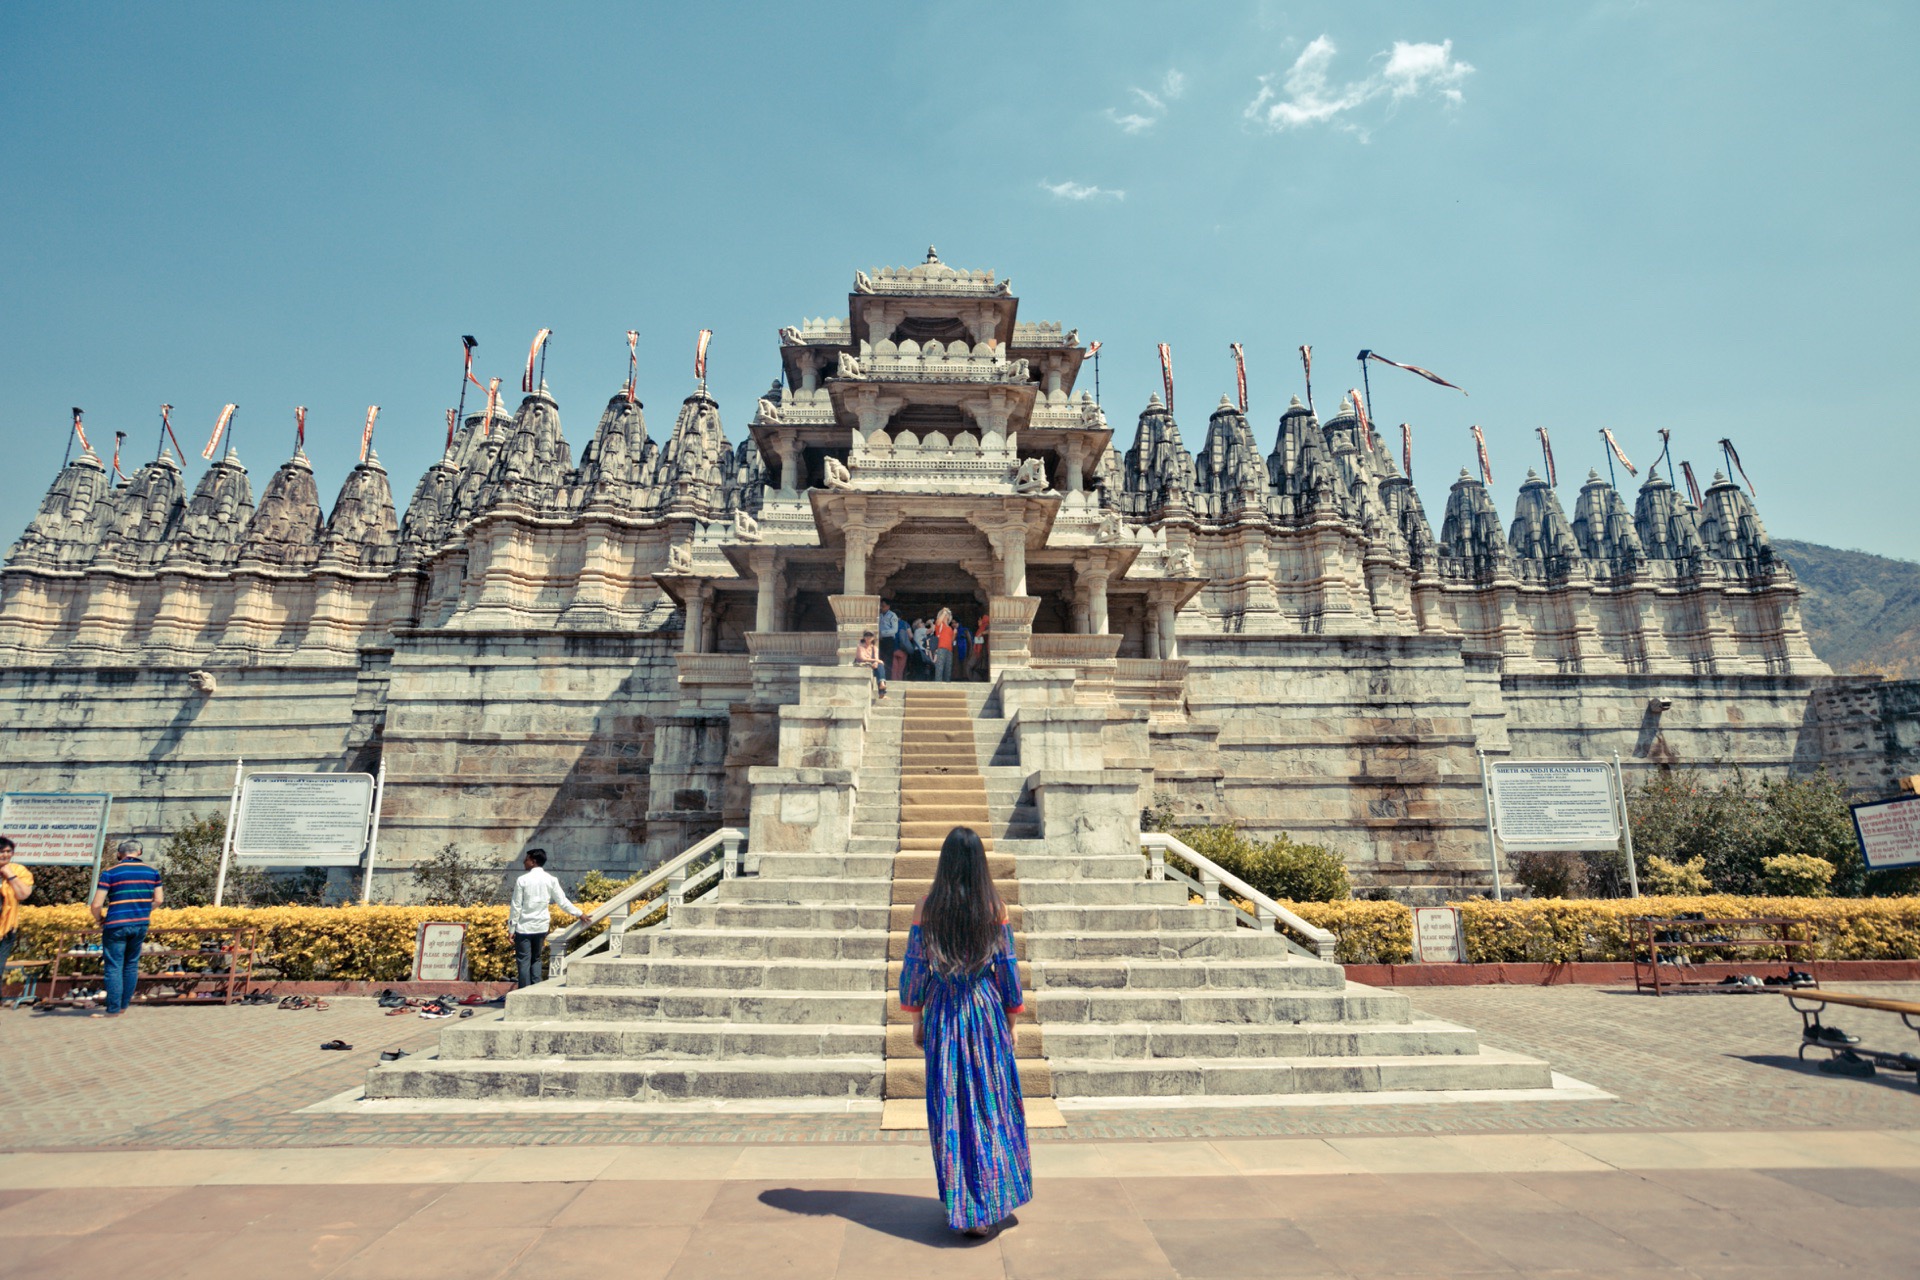 让人惊叹的千柱寺 Ranakpur千柱寺位于焦特布尔和乌代布尔之间，是印度最大、最重要的蓍那教神庙。